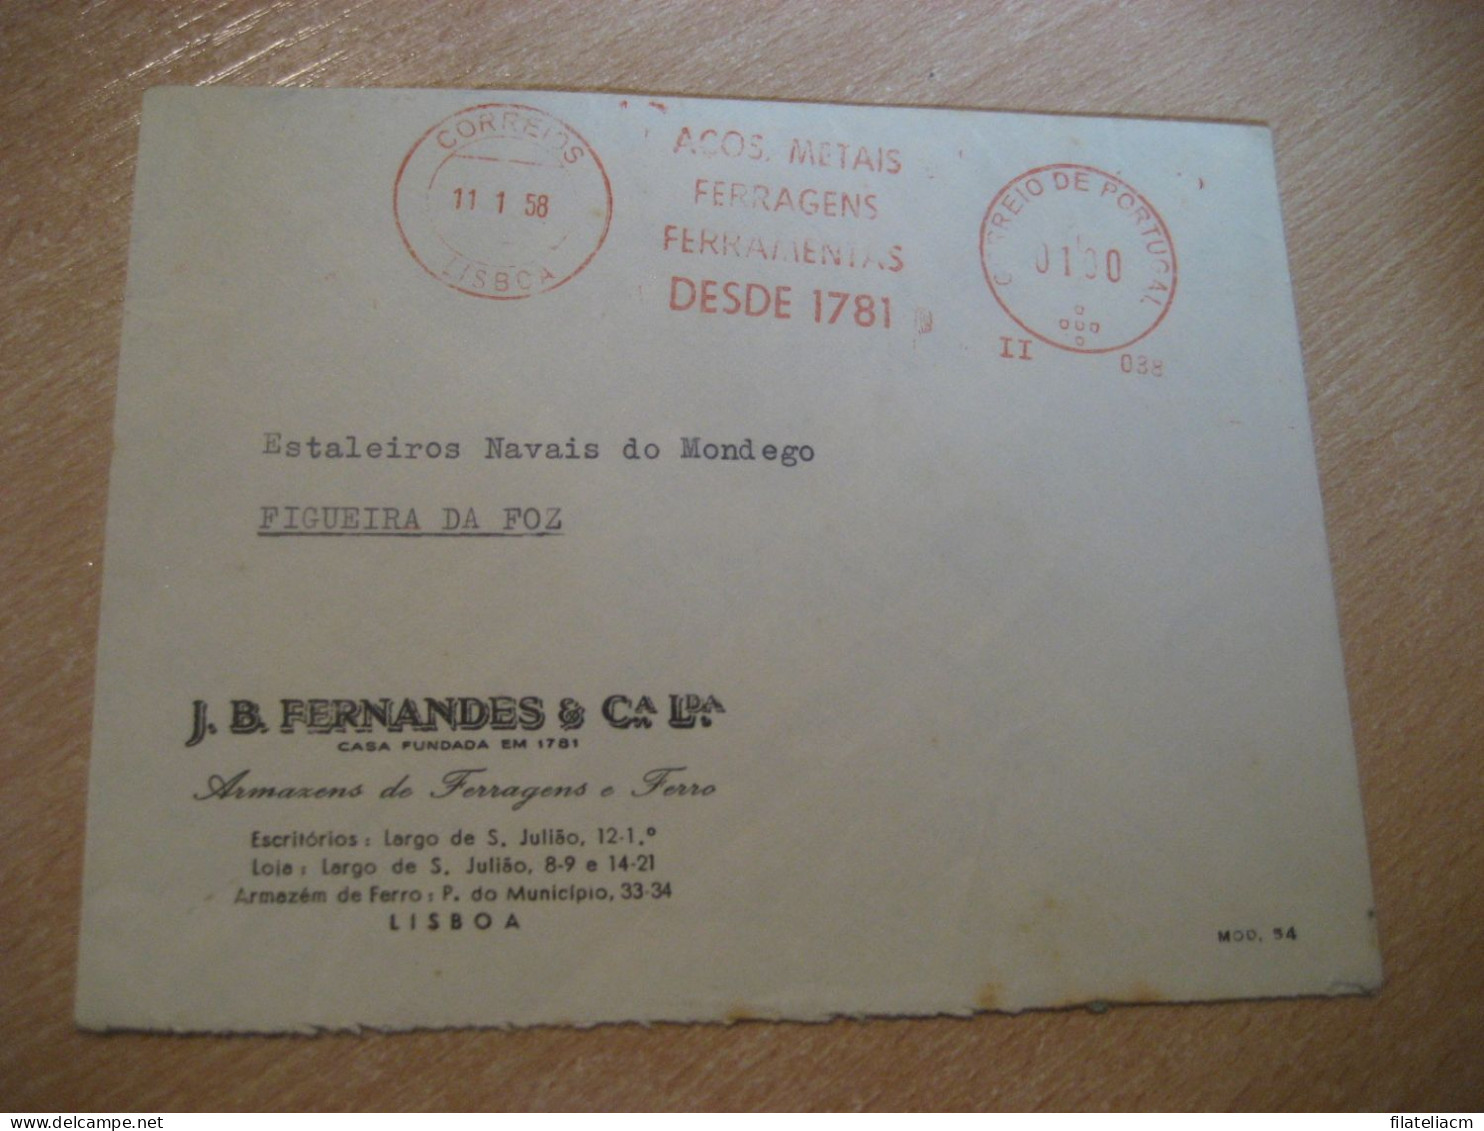 LISBOA 1958 To Figueira Da Foz Acos Metais Ferragens Ferramentas Meter Mail Cancel Cover PORTUGAL - Lettres & Documents